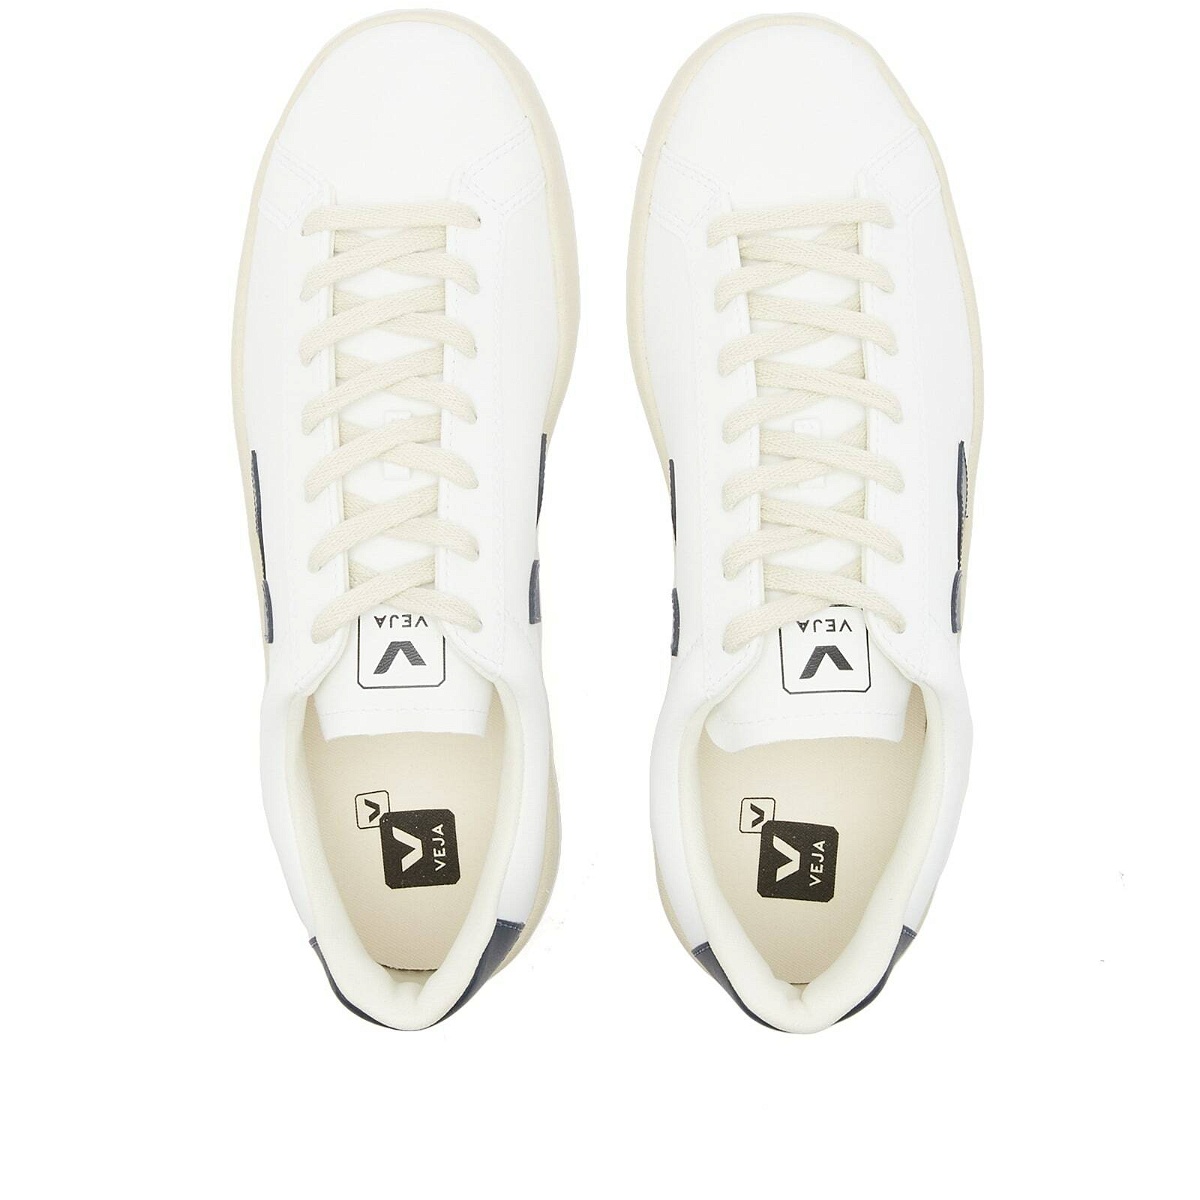 Veja Men's Urca Retro Sneakers in White/Nautico VEJA